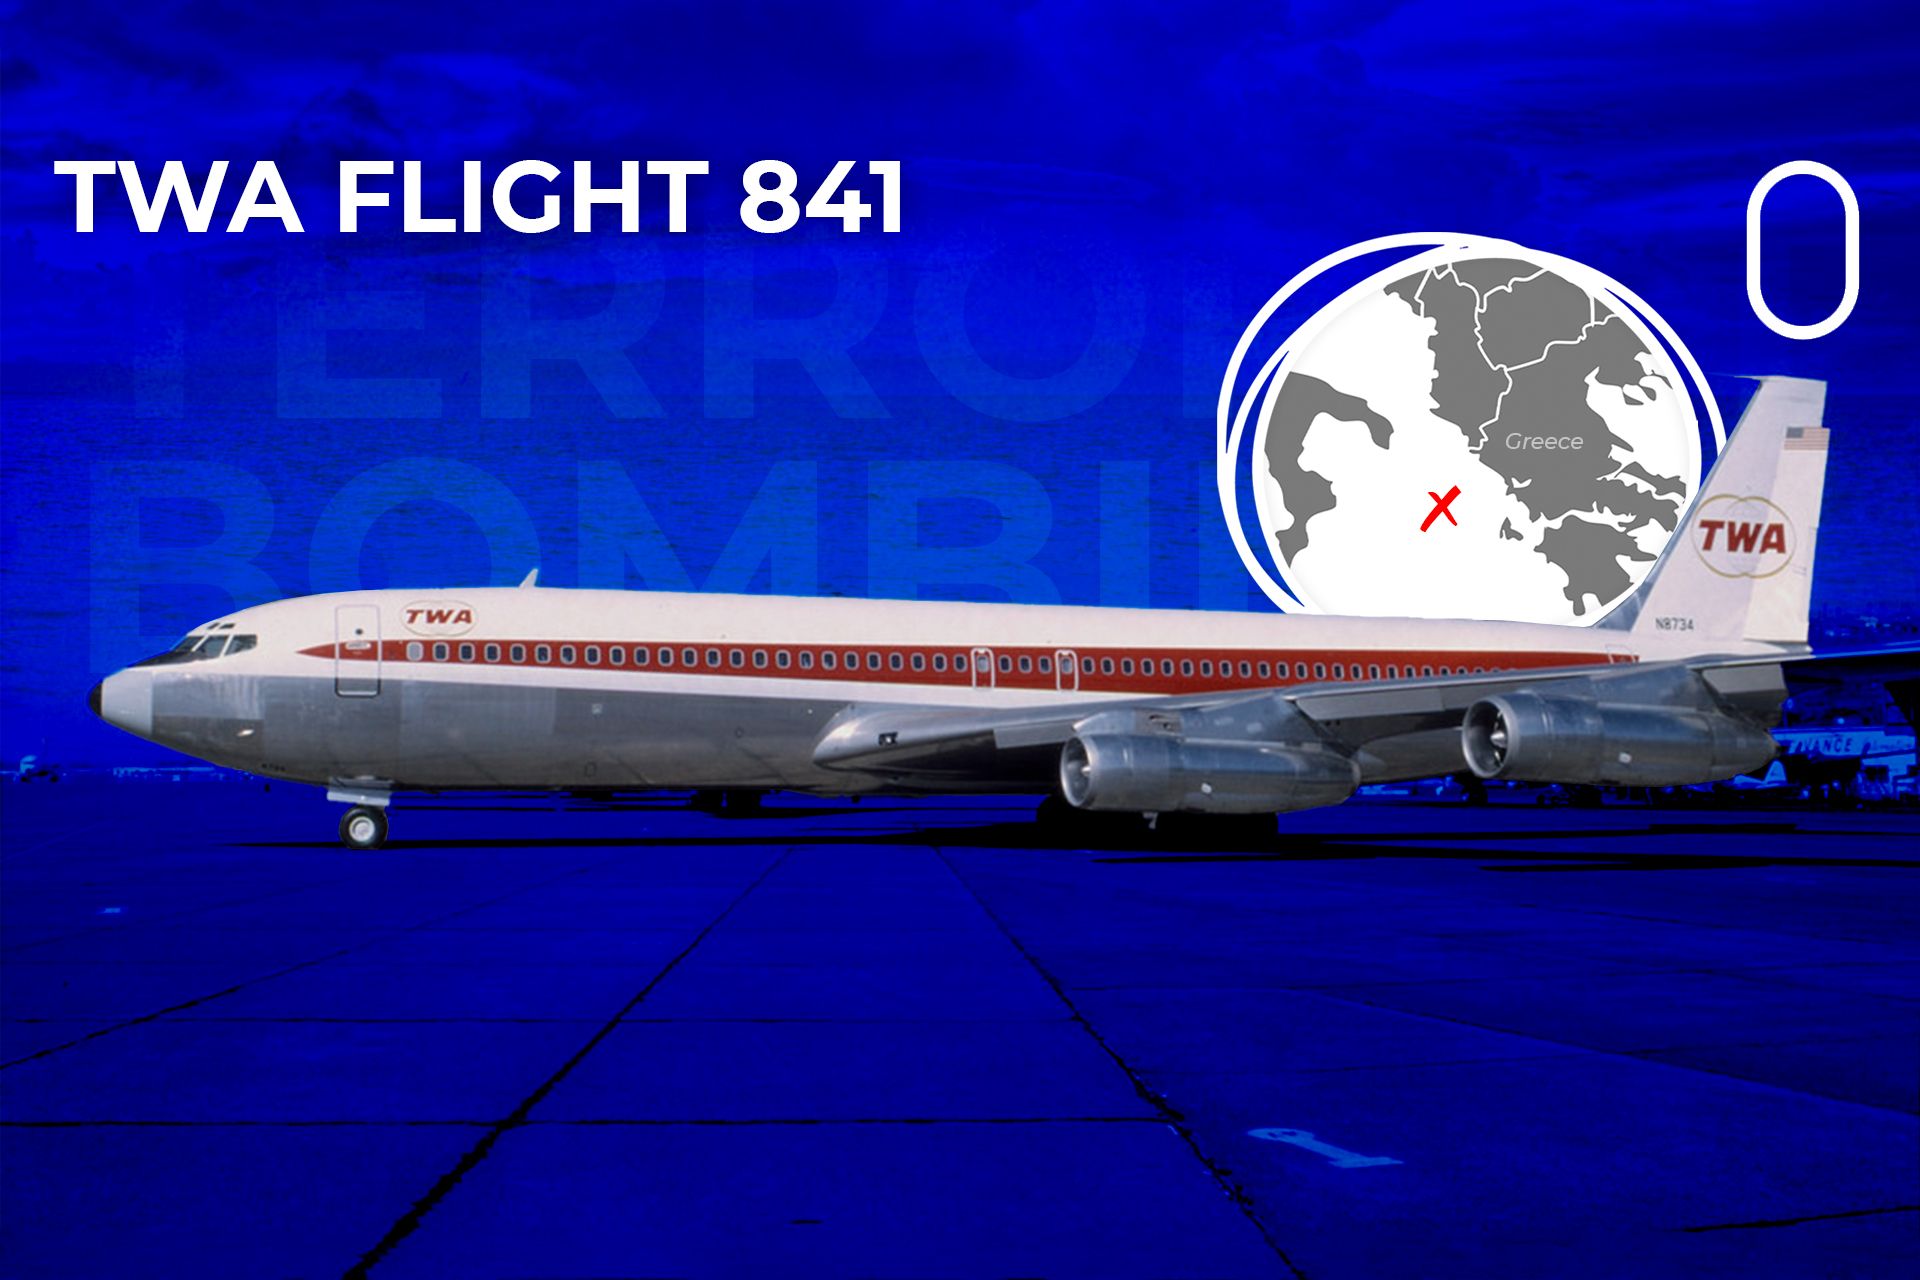 Trans World Airlines Flight 841 (1974) by Flight-Simulator on